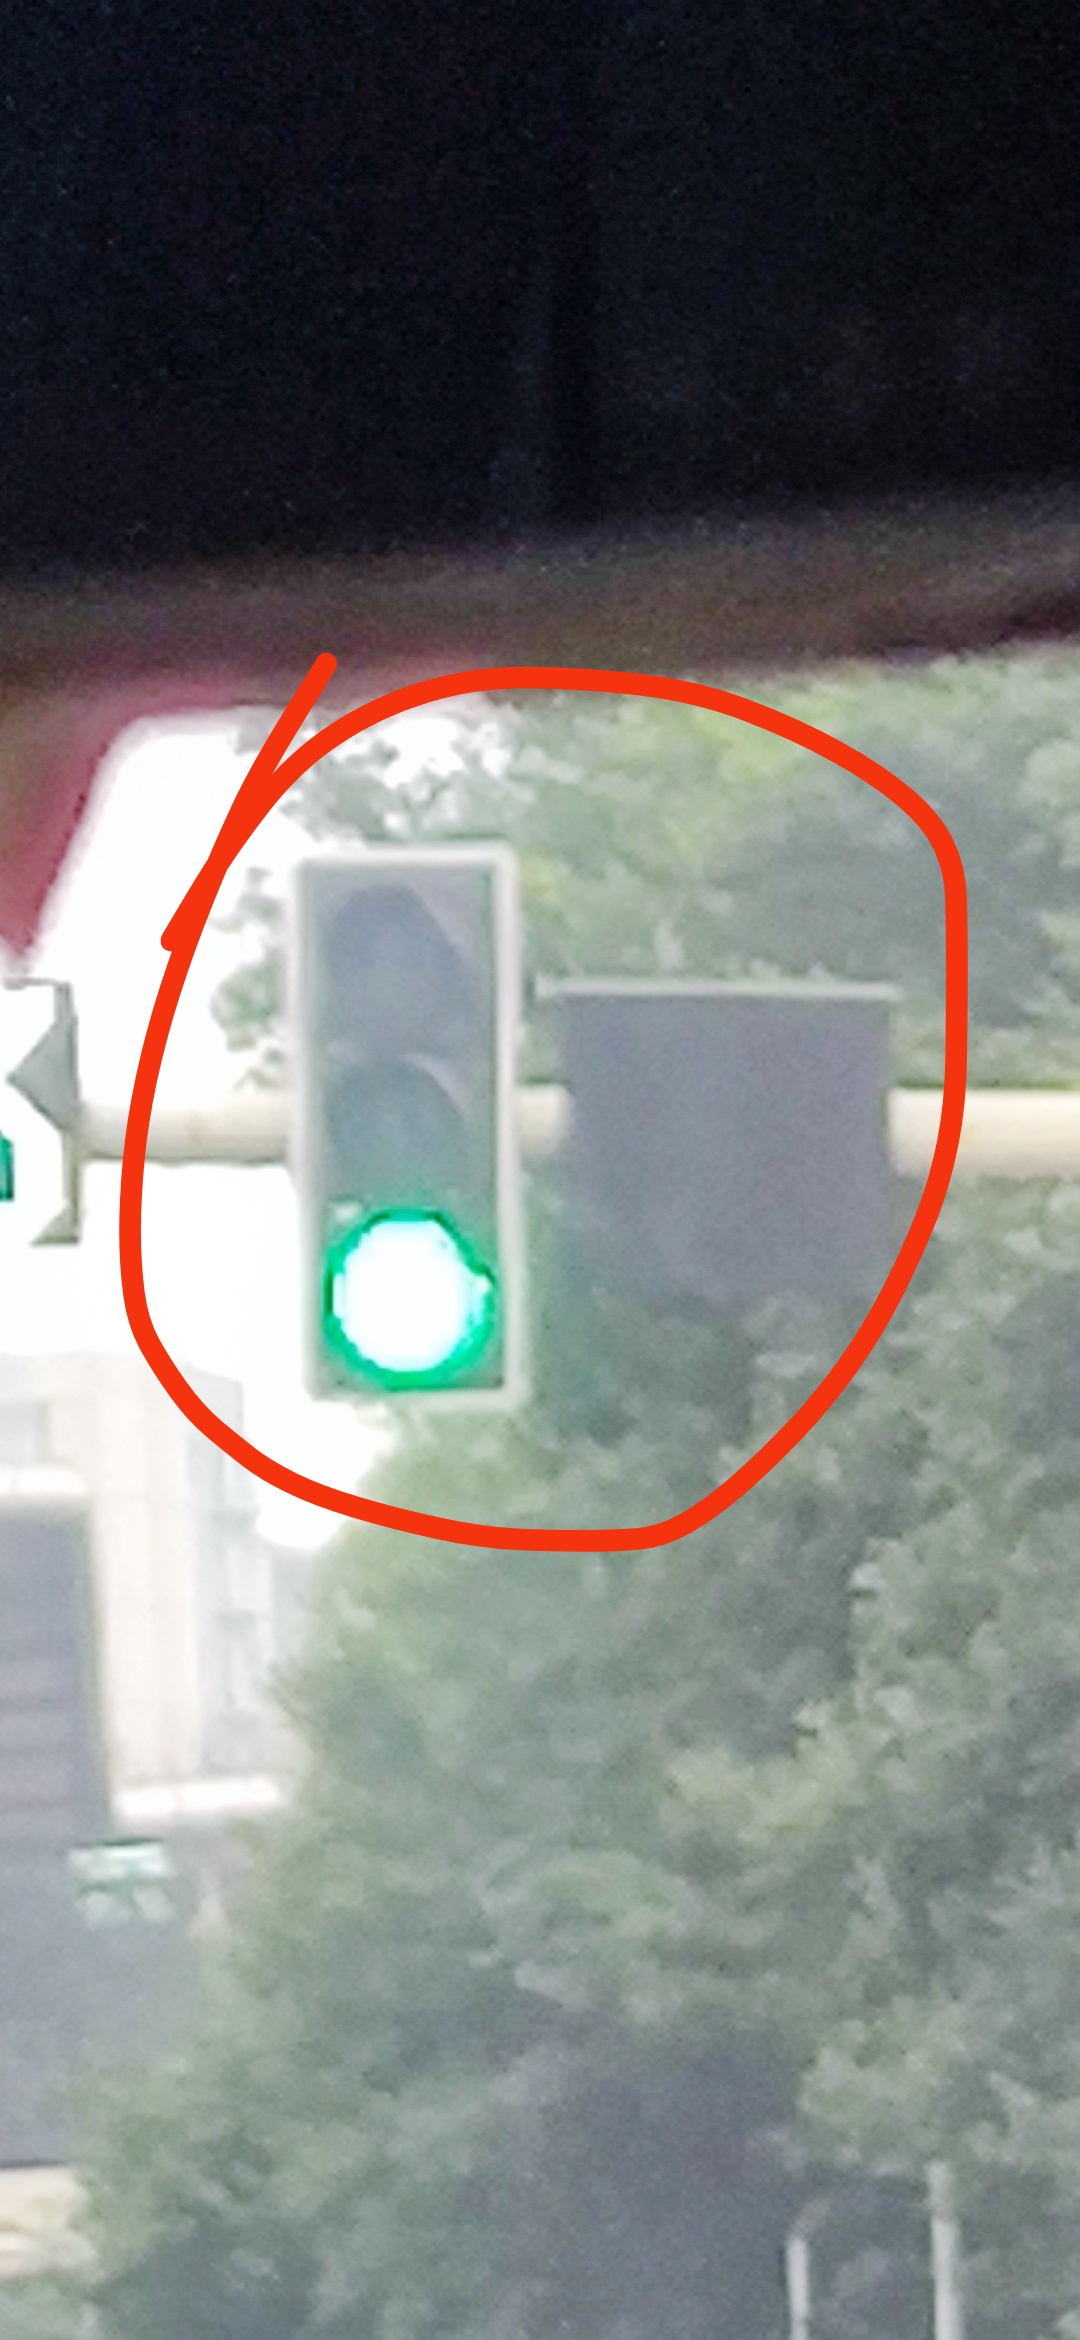 T字路口红绿灯图片